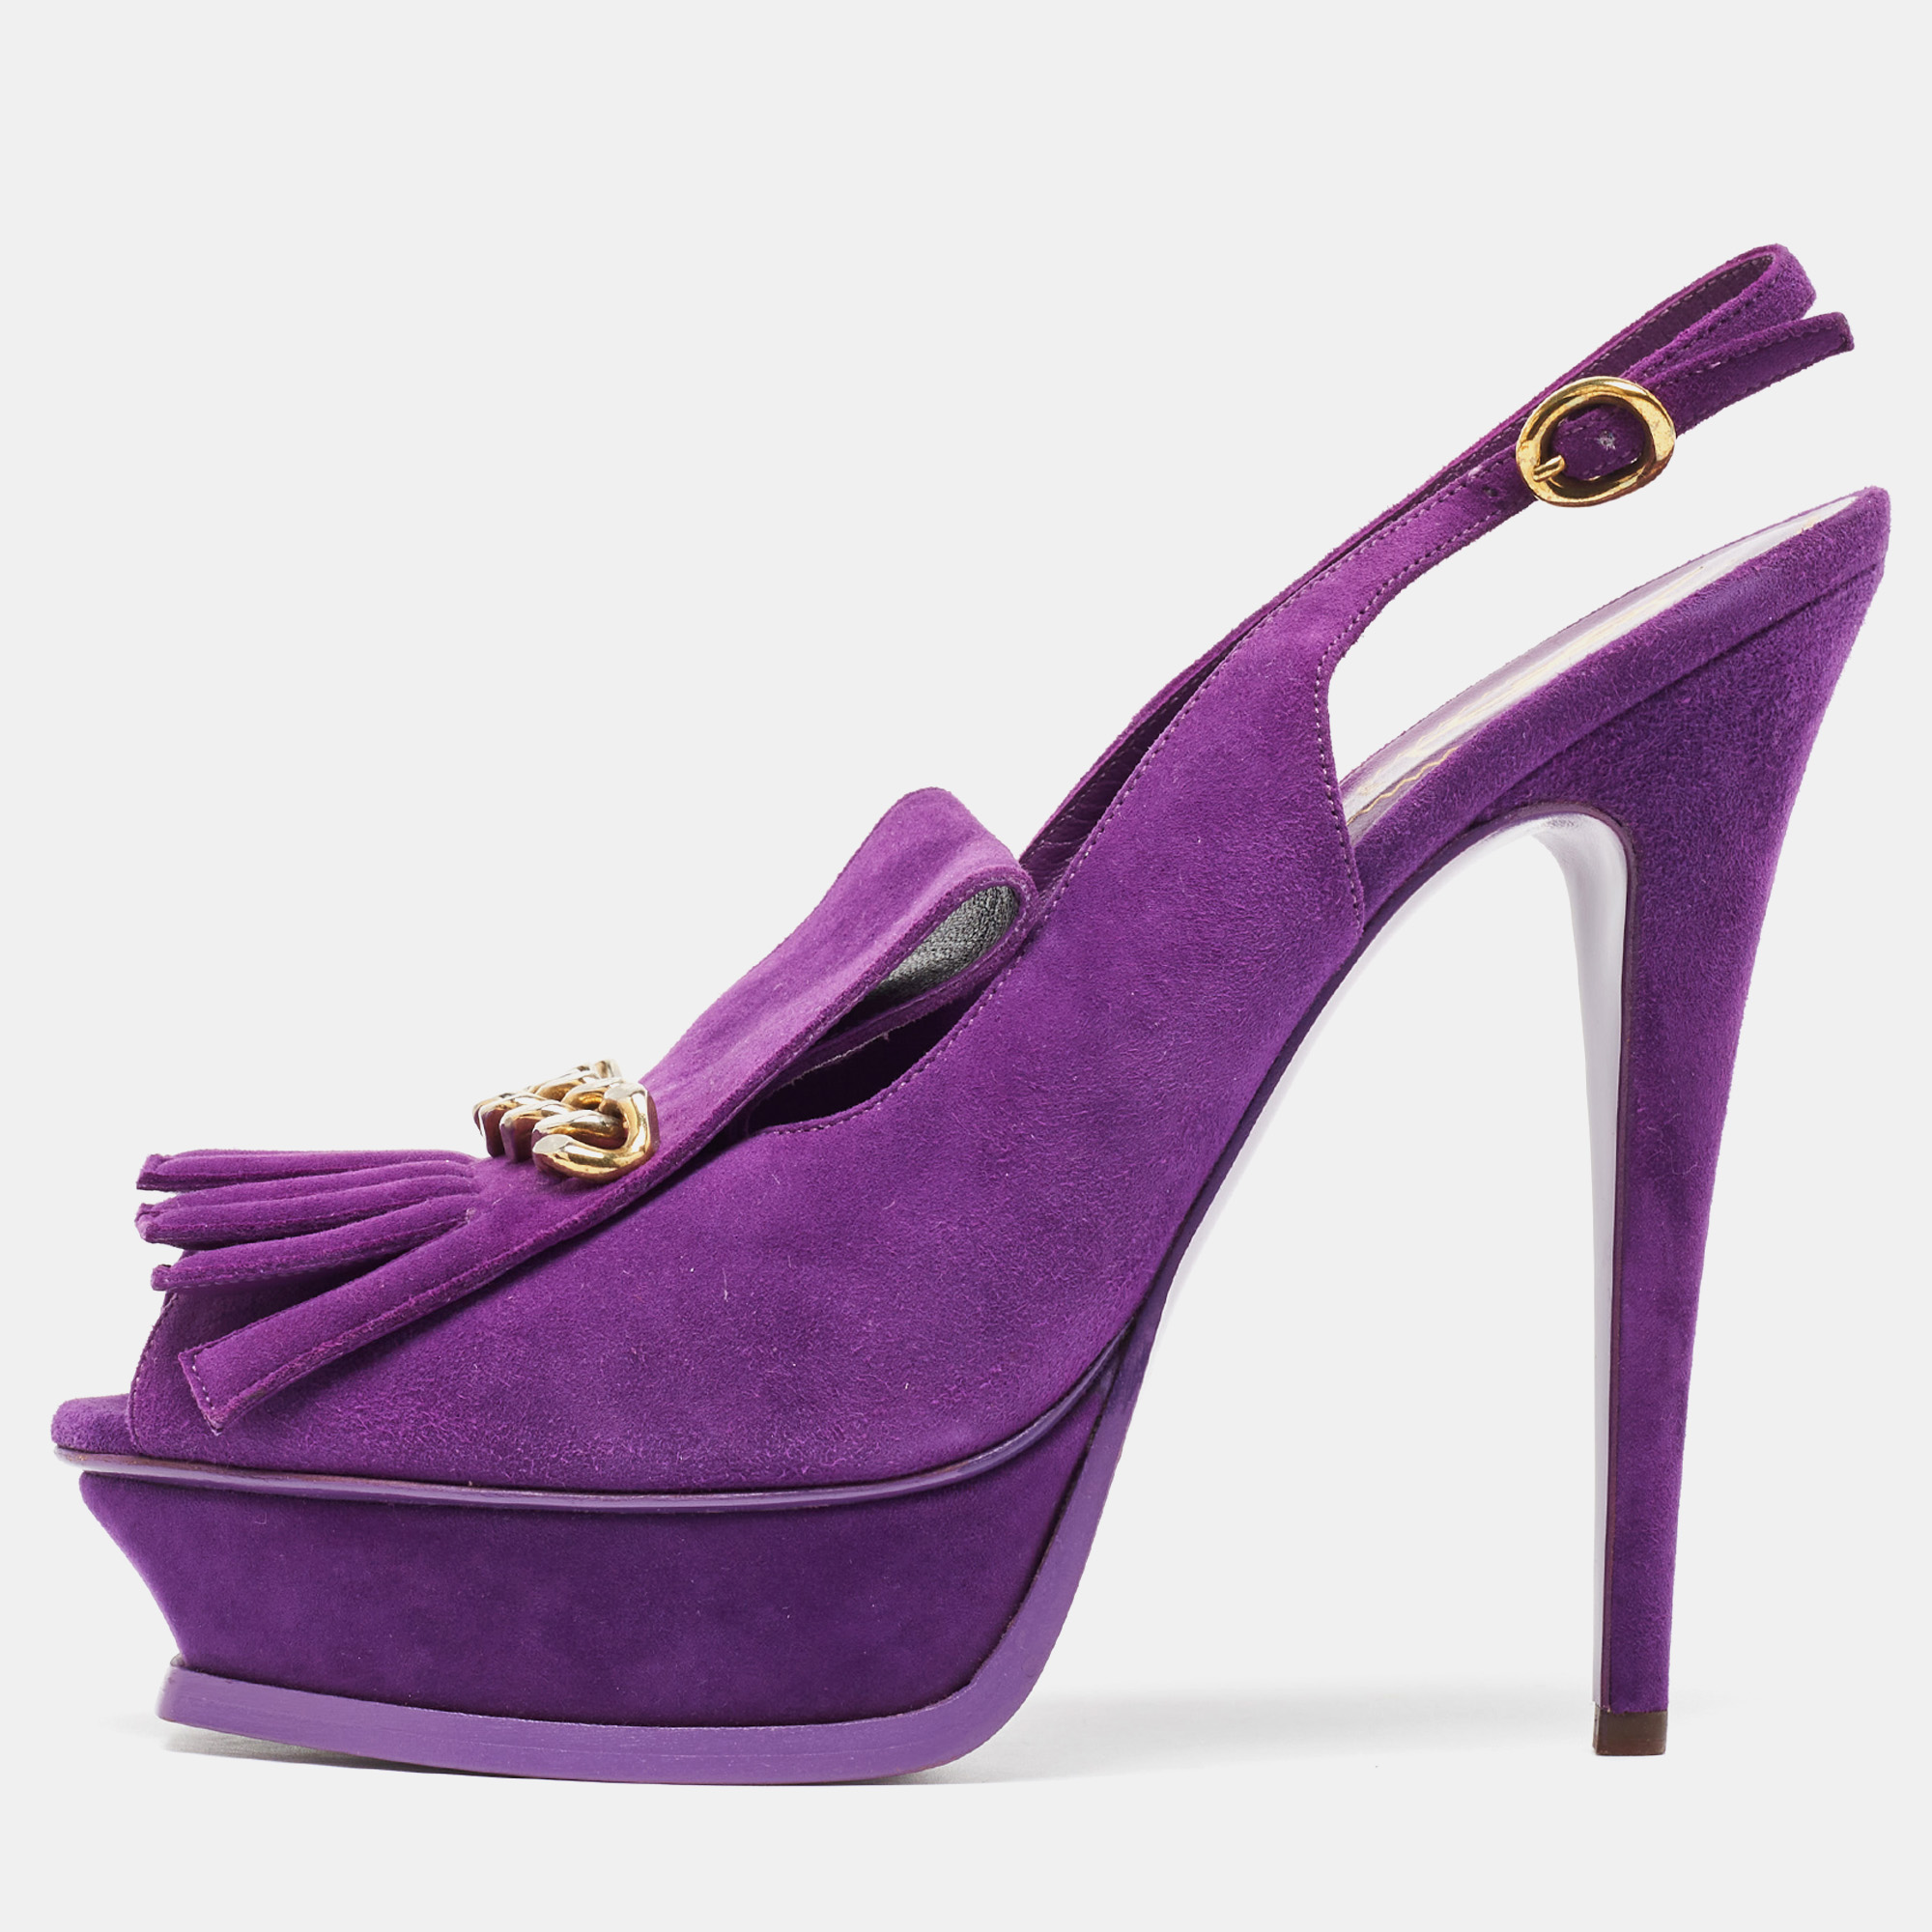 Yves saint laurent purple suede slingback platform sandals size 41